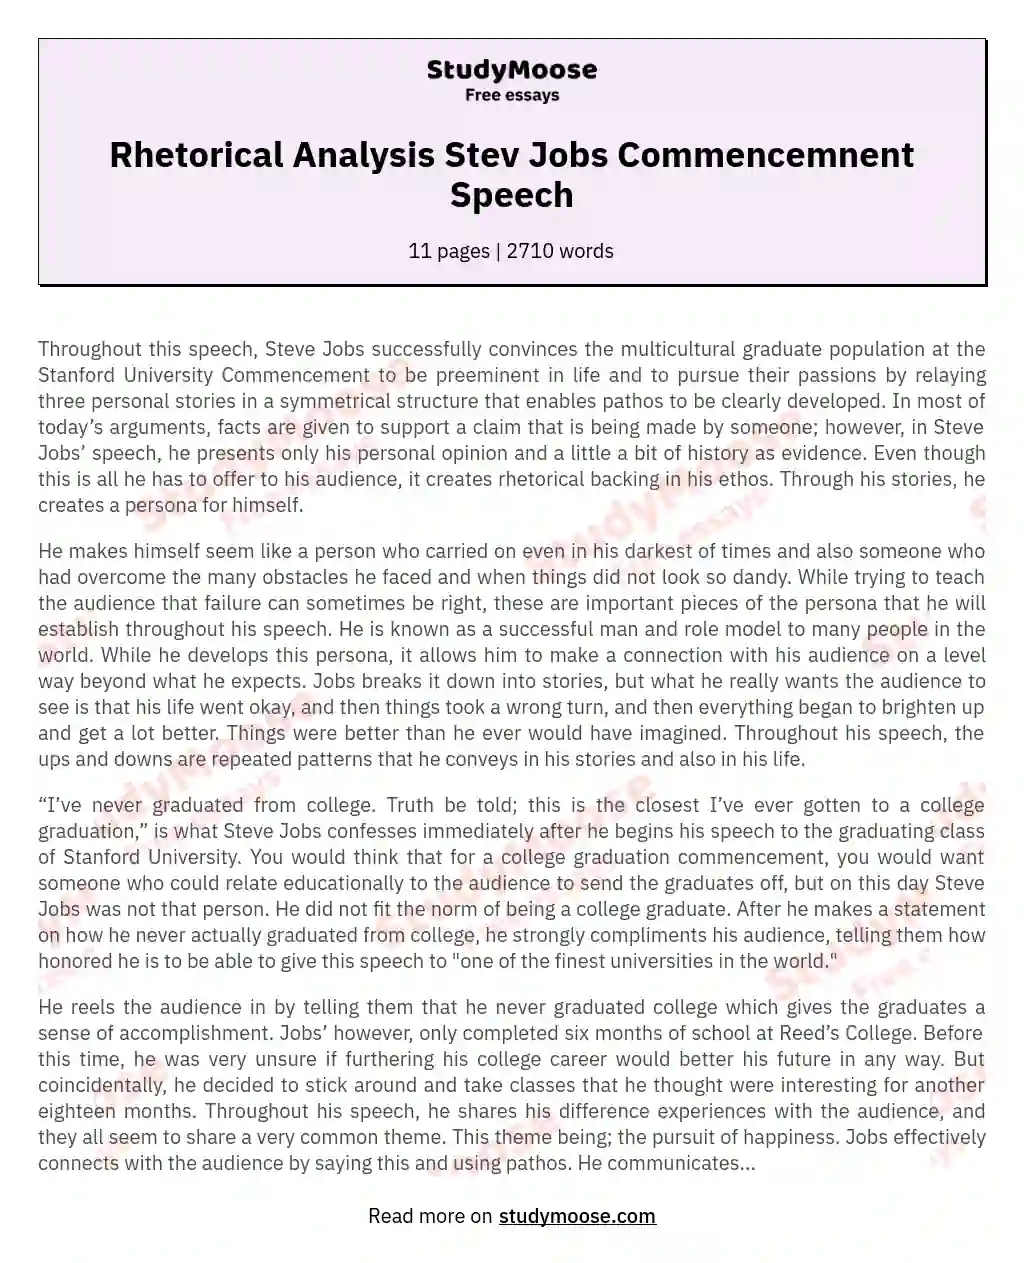 Rhetorical Analysis Stev Jobs Commencemnent Speech essay